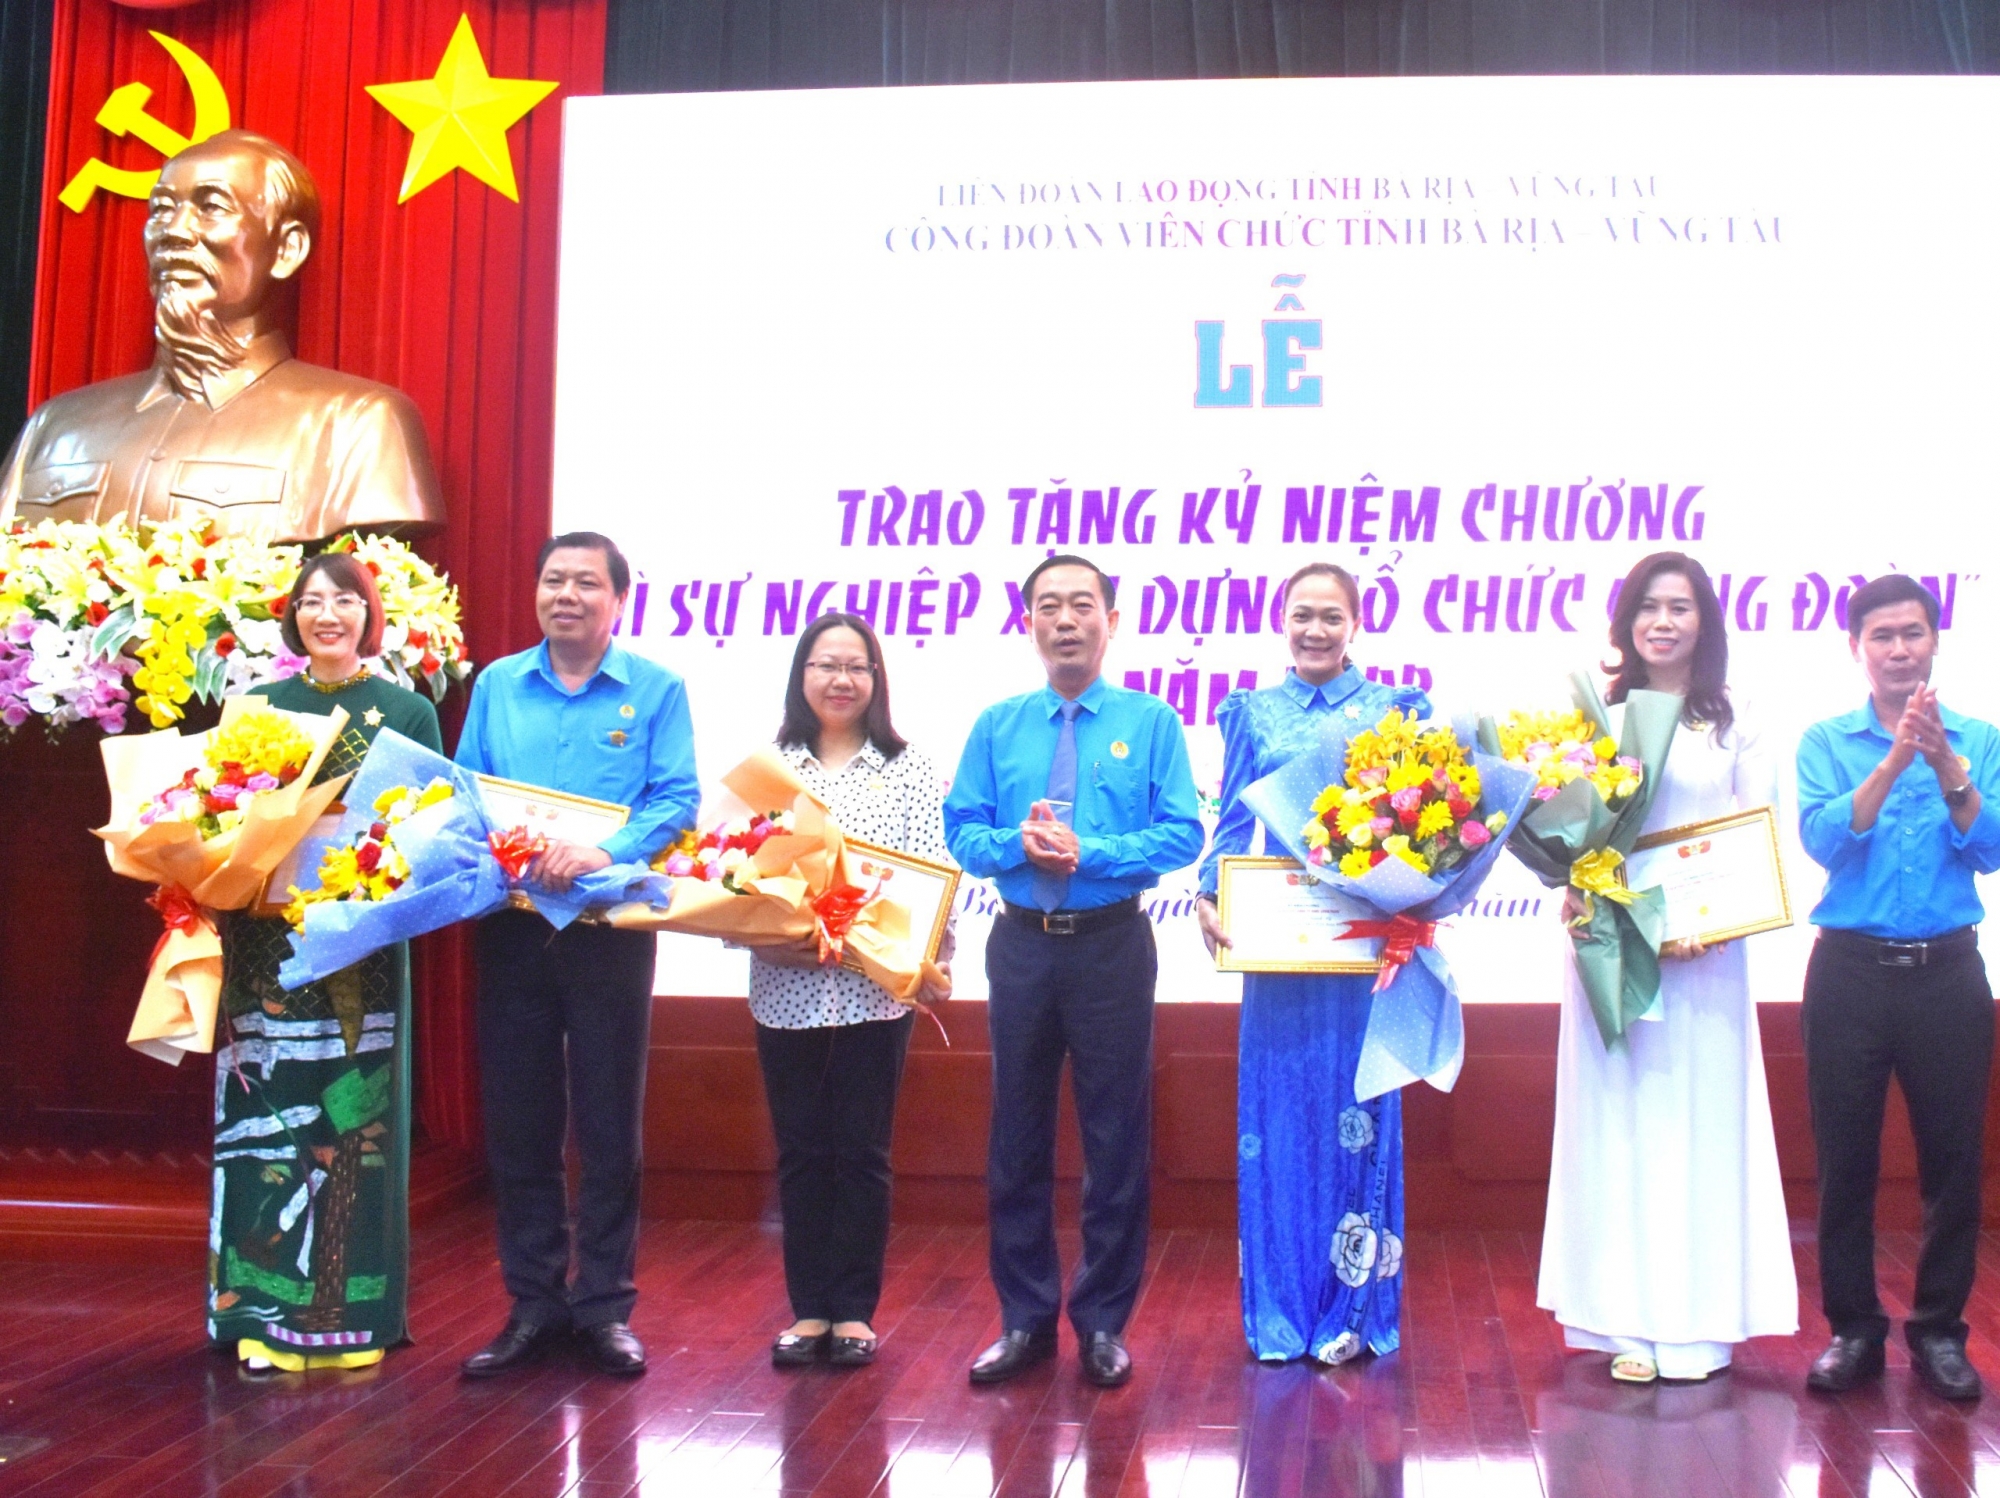 CĐVC tỉnh Bà Rịa - Vũng Tàu tổ chức Lễ trao tặng Kỷ niệm chương “Vì sự nghiệp xây dựng tổ chức Công đoàn”